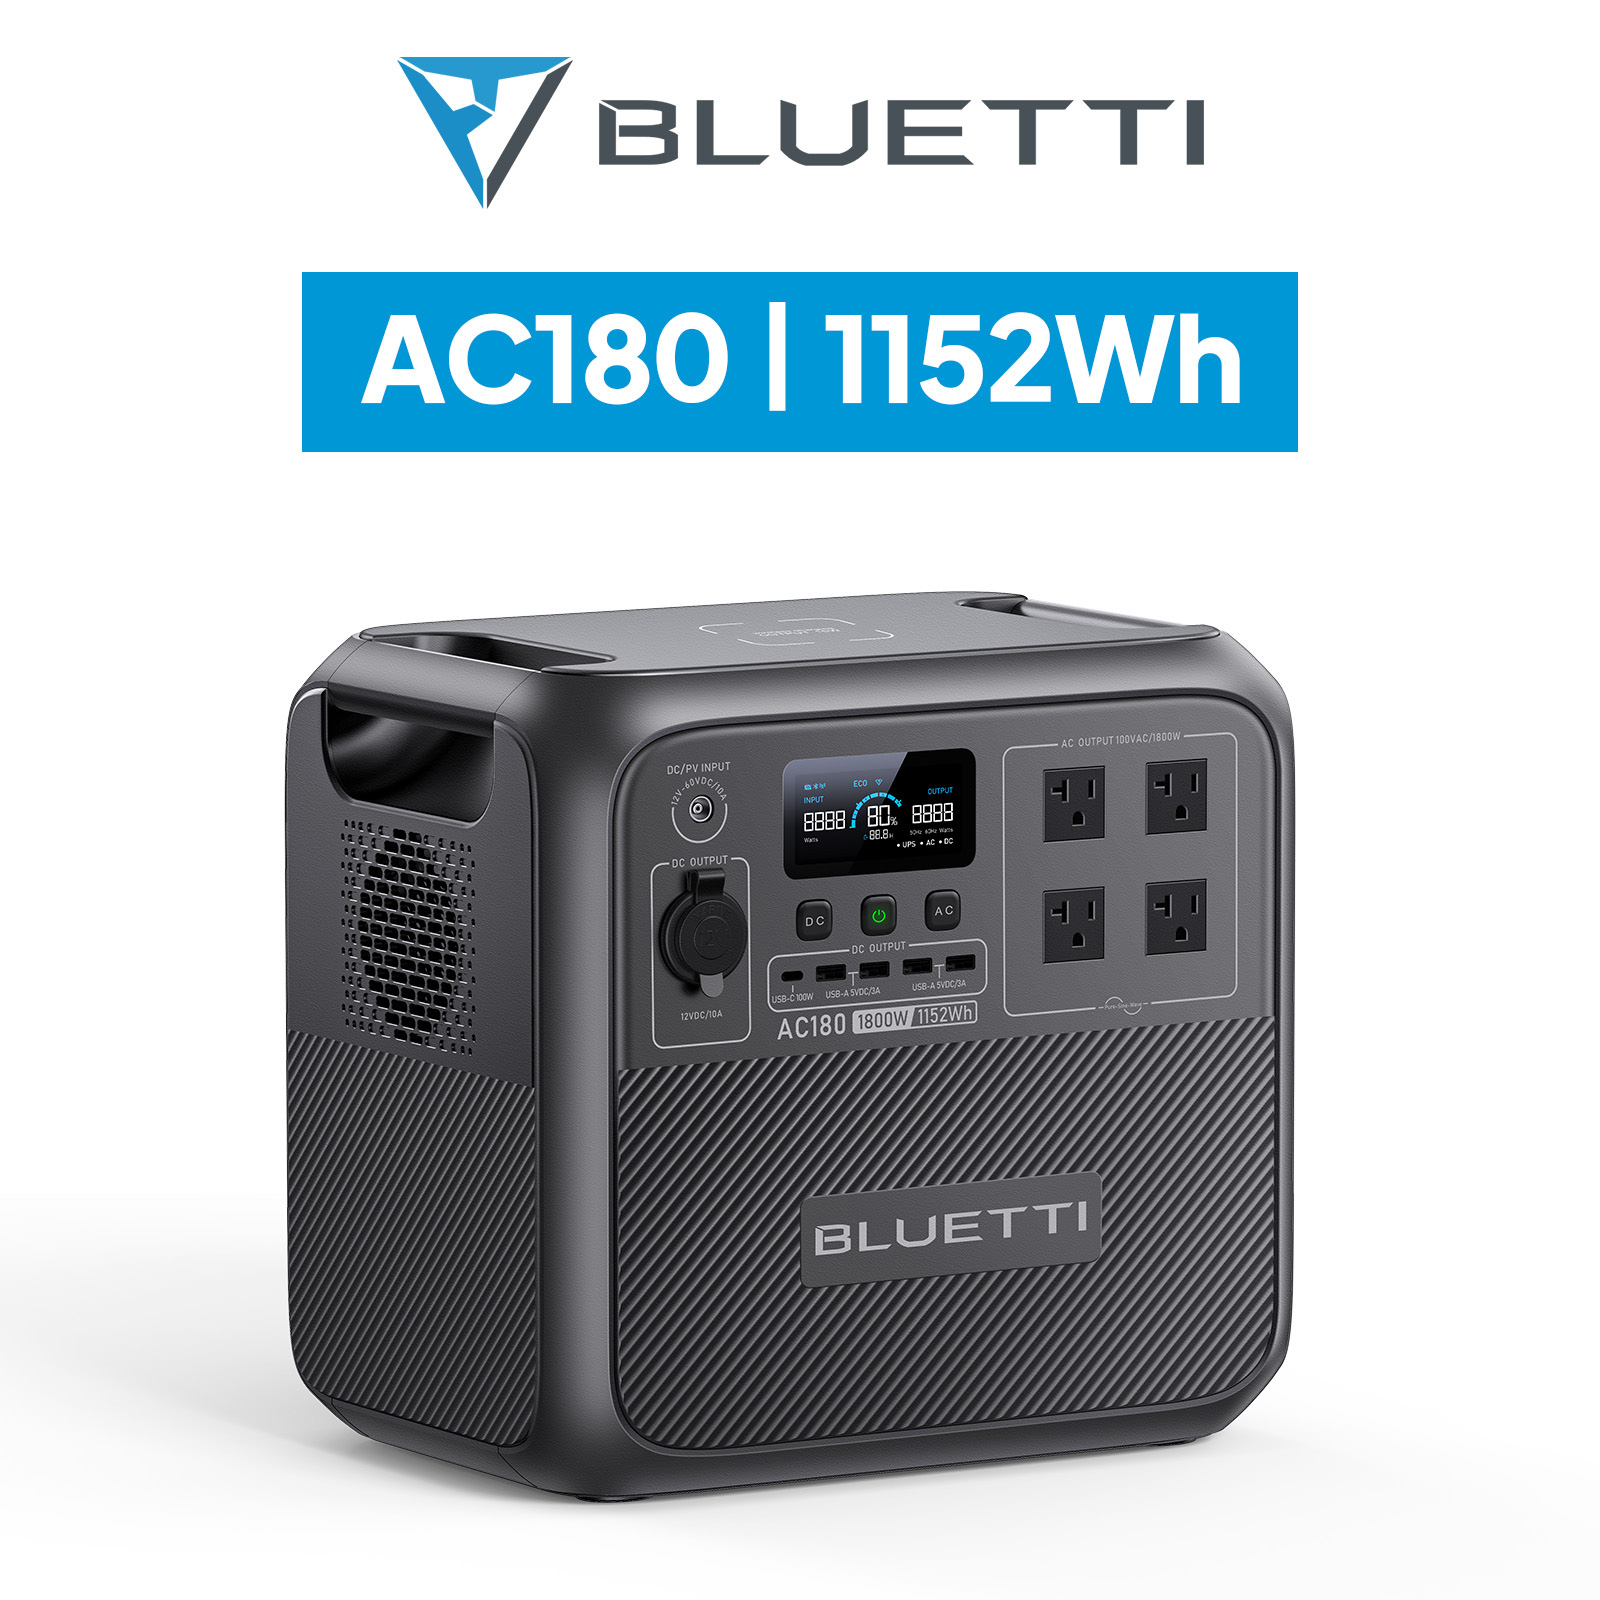 BLUETTI ポータブル電源 AC180 1152Wh/1800W 60分満充電 蓄電池 大容量 